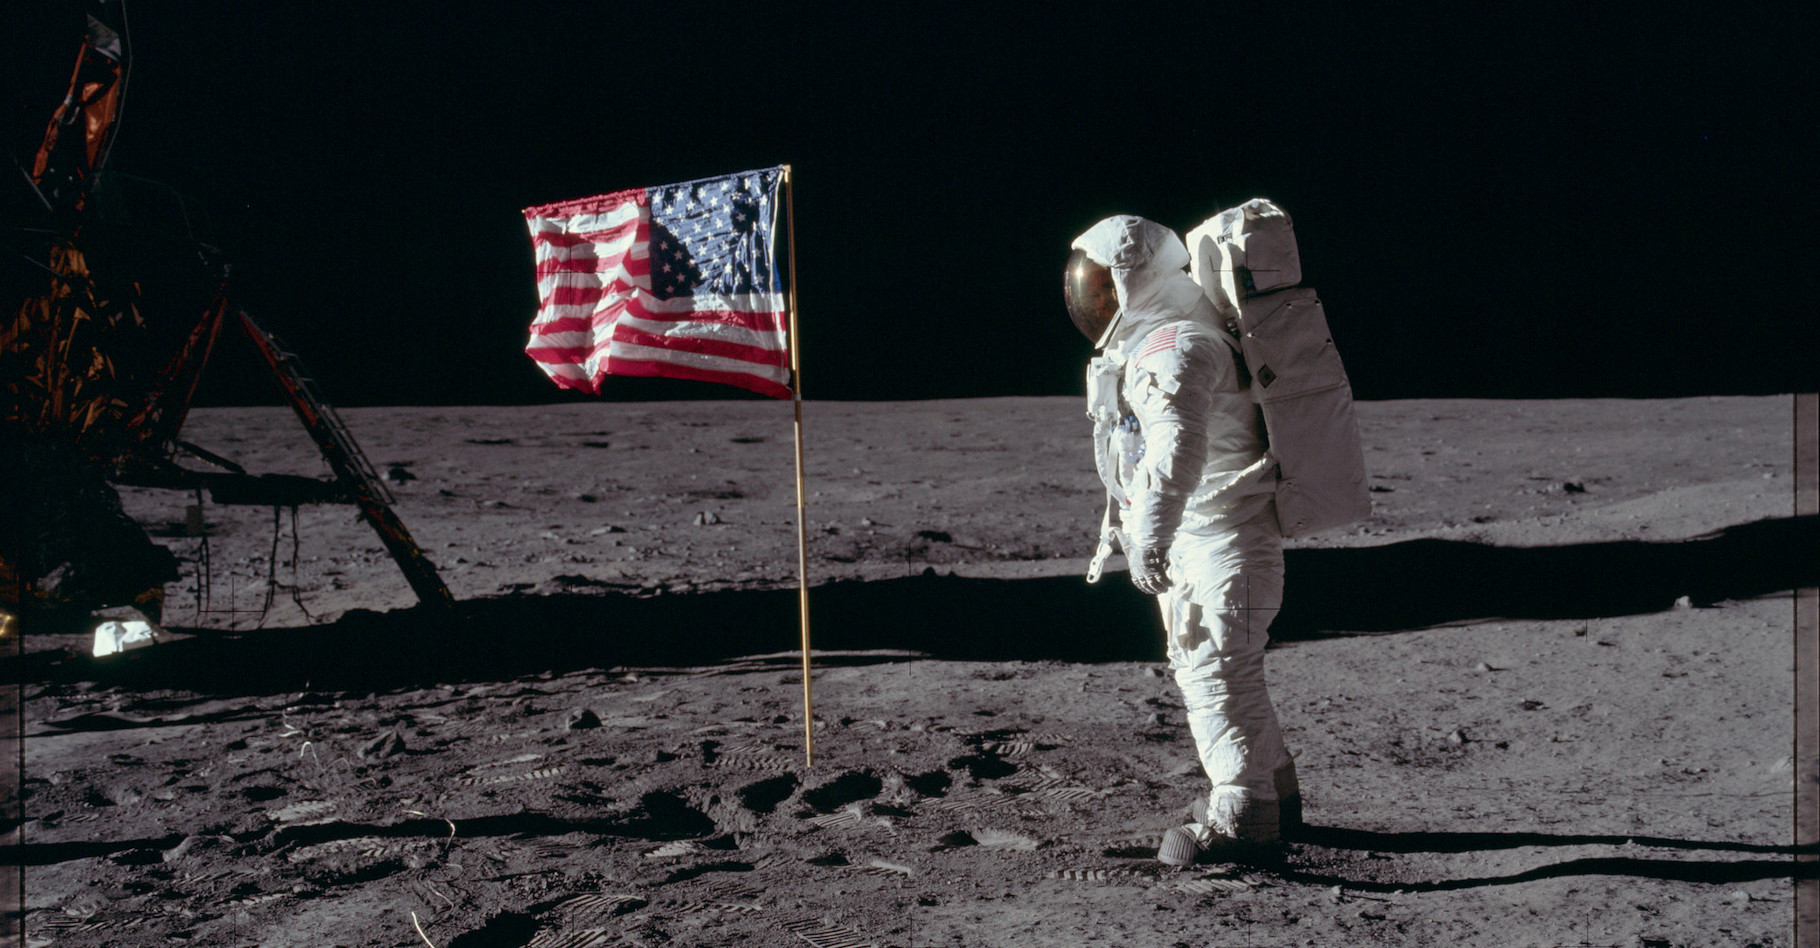 L’Homme a-t-il réellement posé le pied sur la Lune en 1969 ? Face aux « nombreuses incohérences » soulevées par certains, les preuves scientifiques peinent à convaincre. © Project Apollo Archive, Flickr, Domaine public